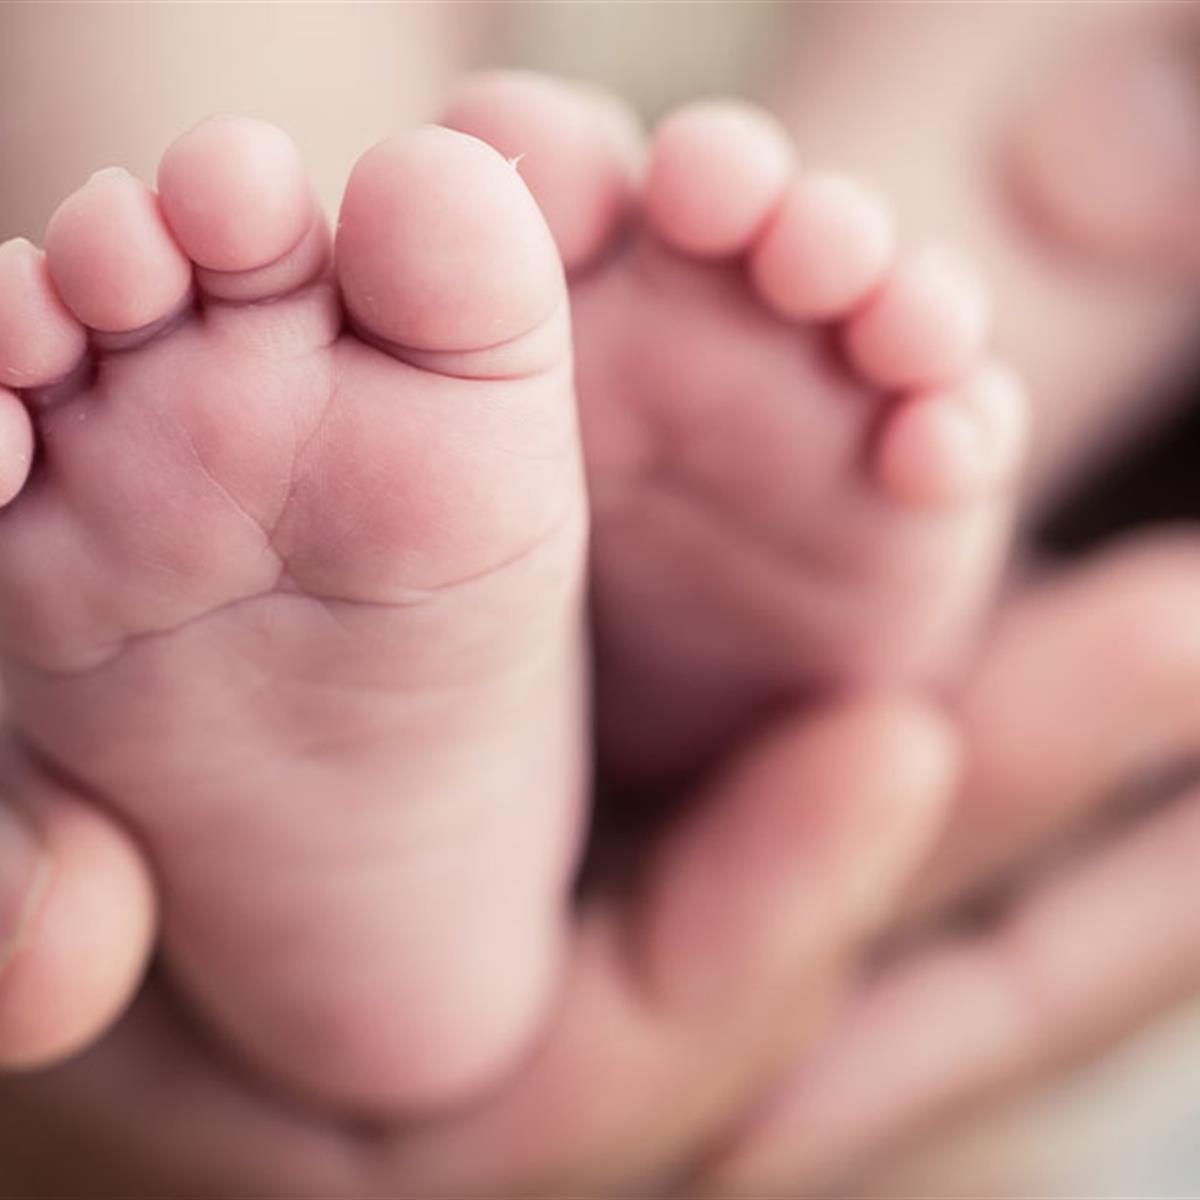 Newborn Feet Common Deformities